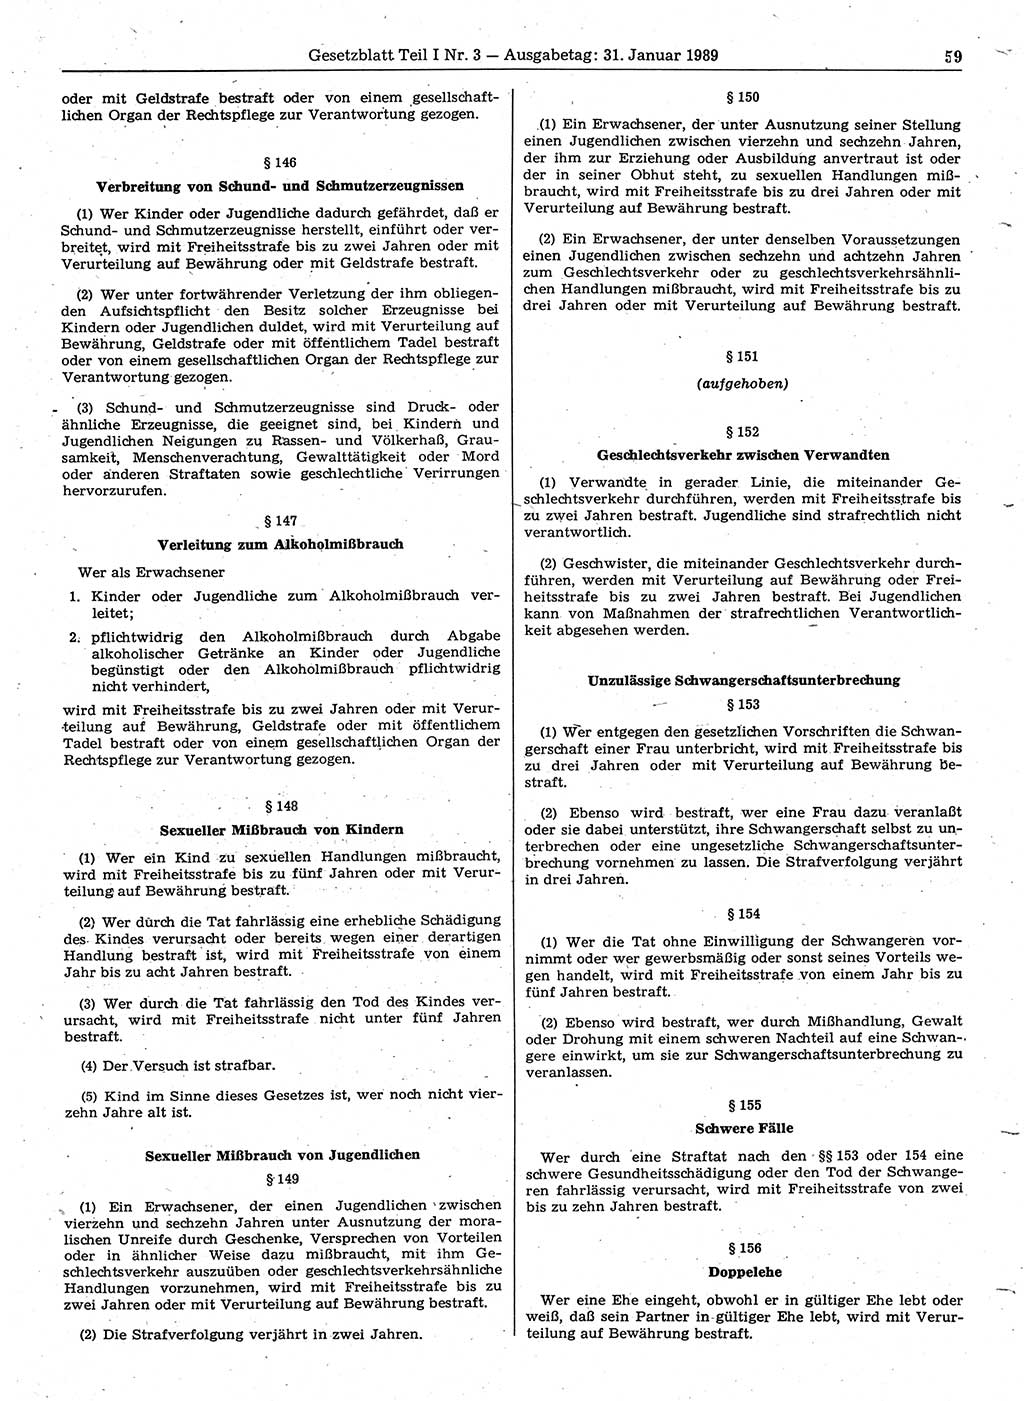 Gesetzblatt (GBl.) der Deutschen Demokratischen Republik (DDR) Teil Ⅰ 1989, Seite 59 (GBl. DDR Ⅰ 1989, S. 59)